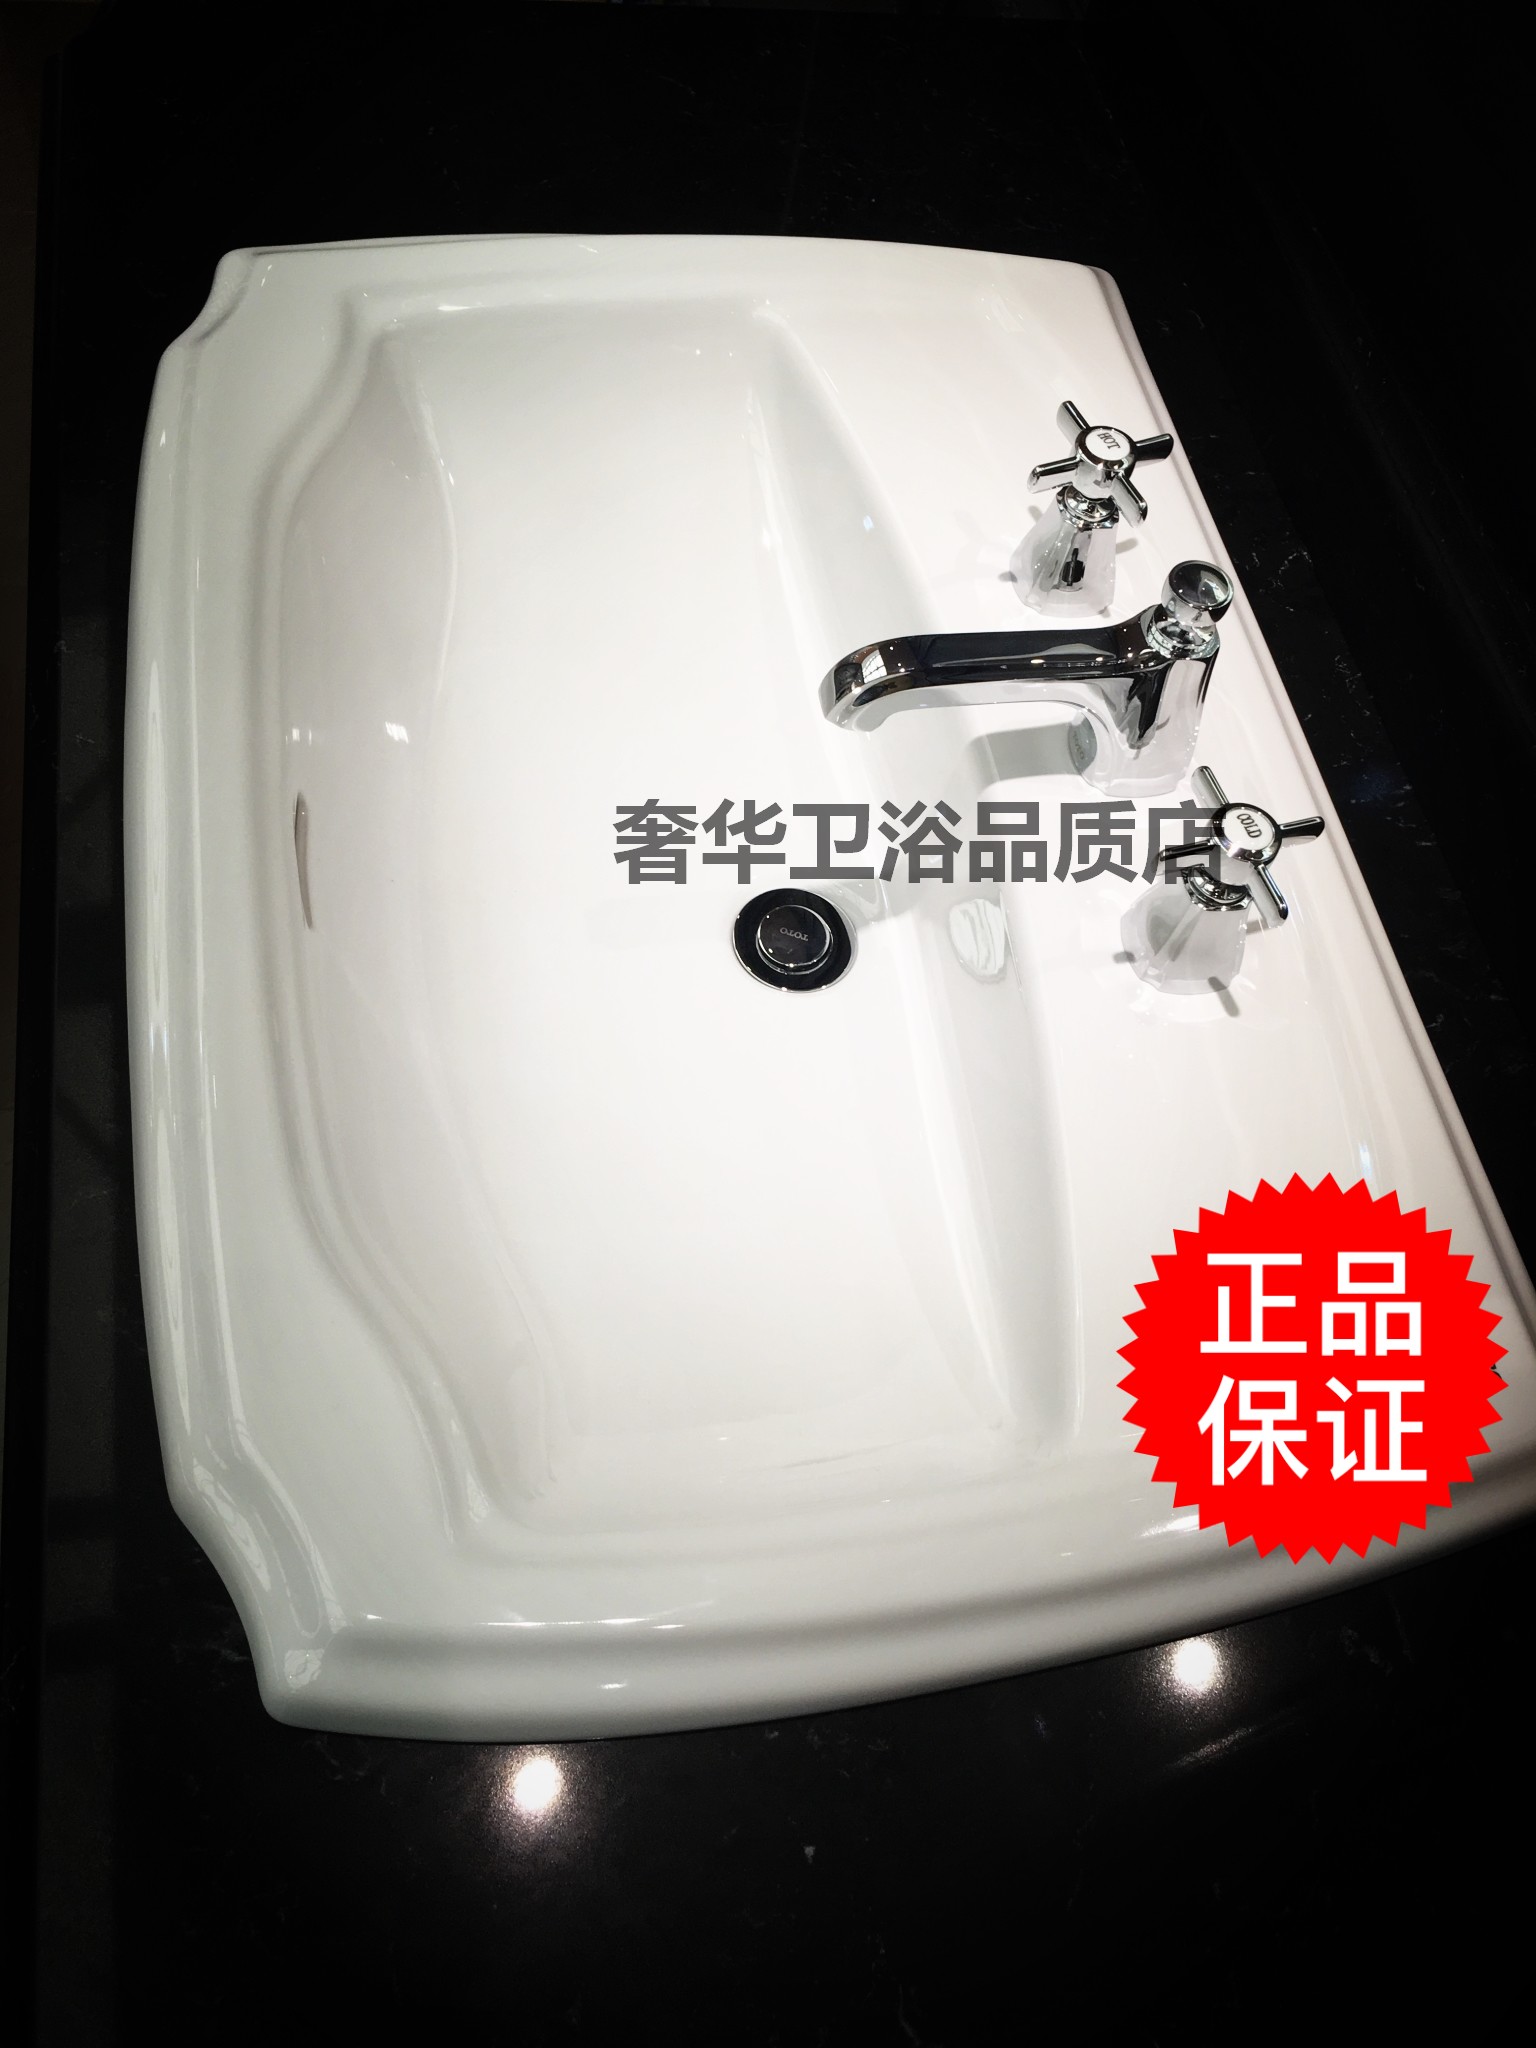 TOTO洁具 卫浴 豪华典雅台上式洗脸盆LW971B/CB 格纳薇系列